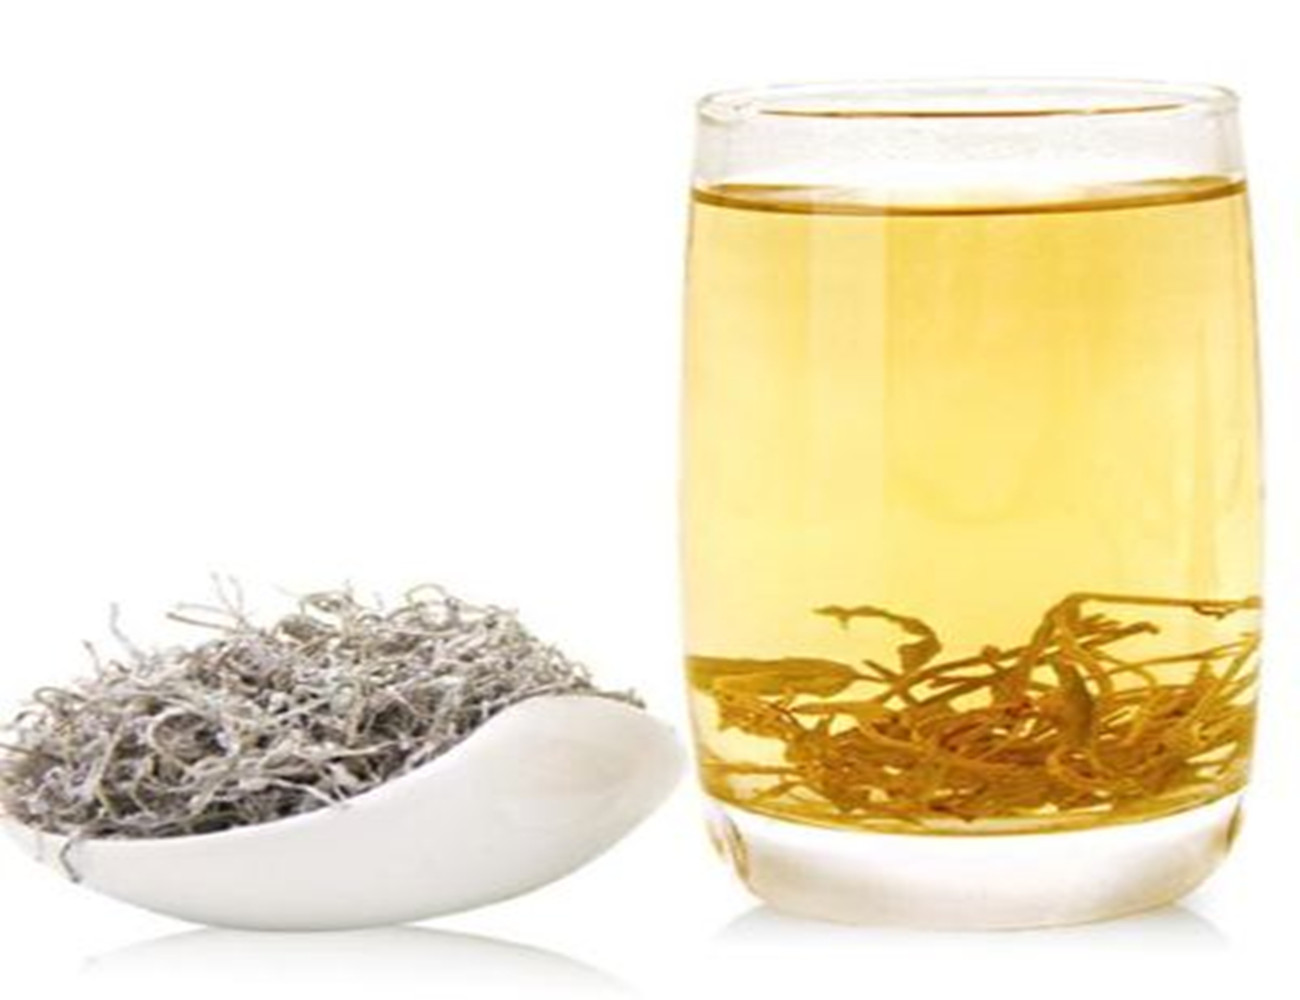 神奇的茅岩莓茶，被称为甘露茶。它白霜满披、清香怡人、滋味醇厚